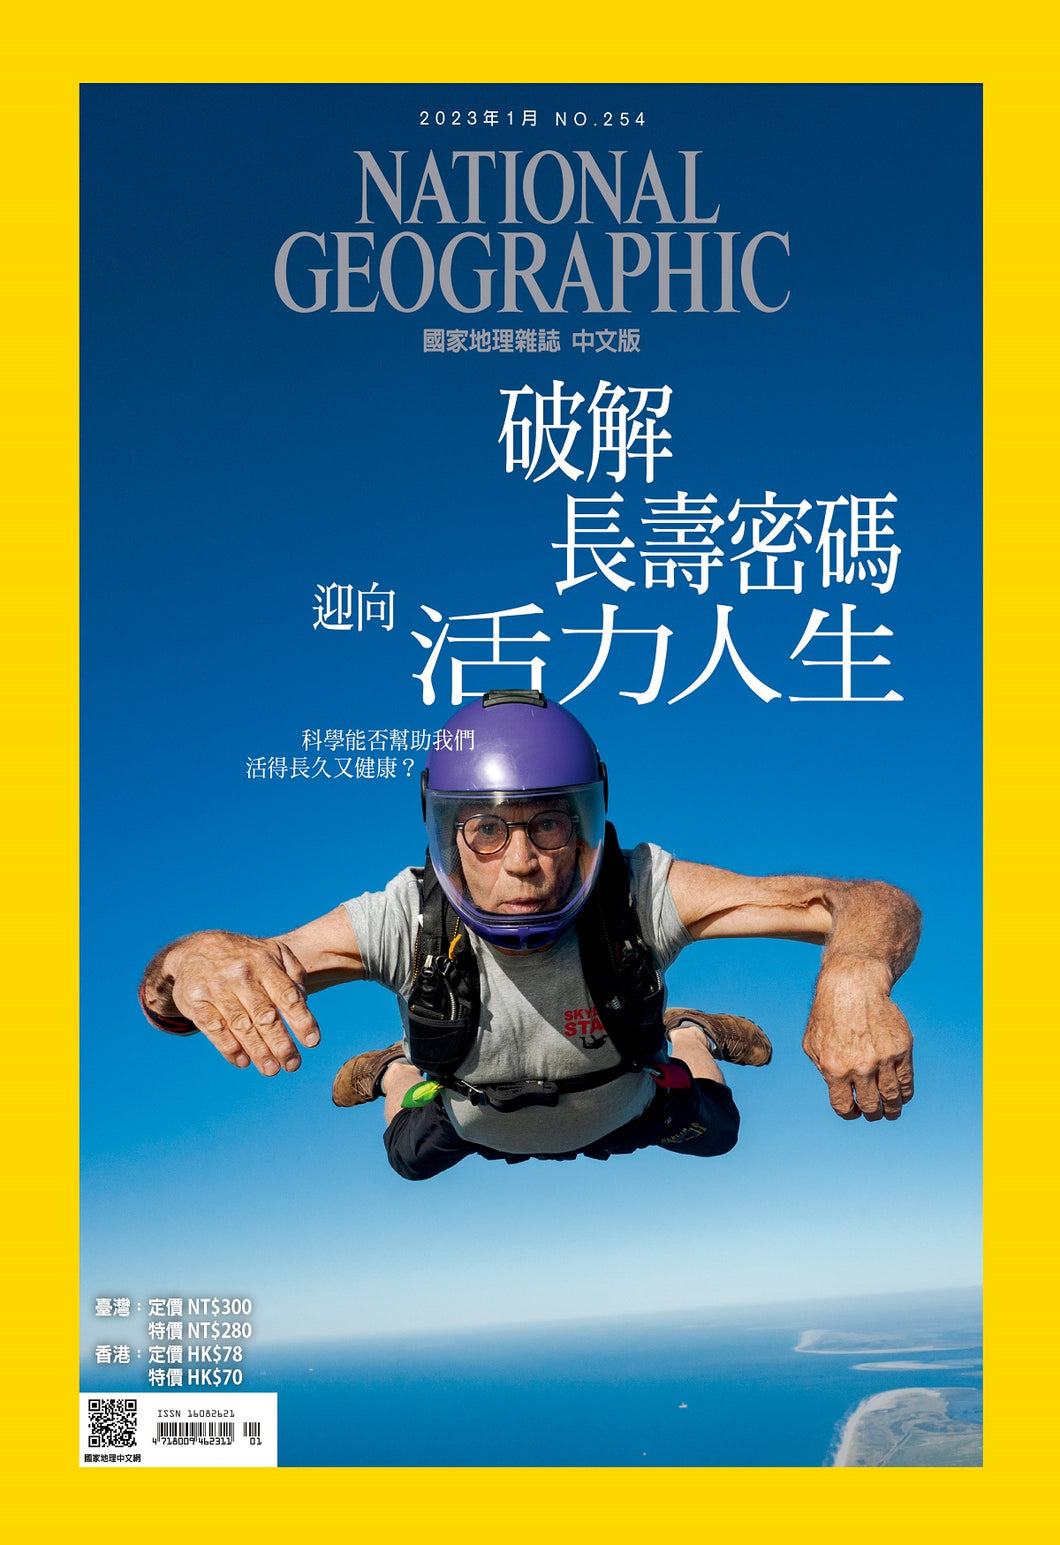 國家地理雜誌 中文版 2023年1月 No.254 破解長壽密碼迎向活力人生